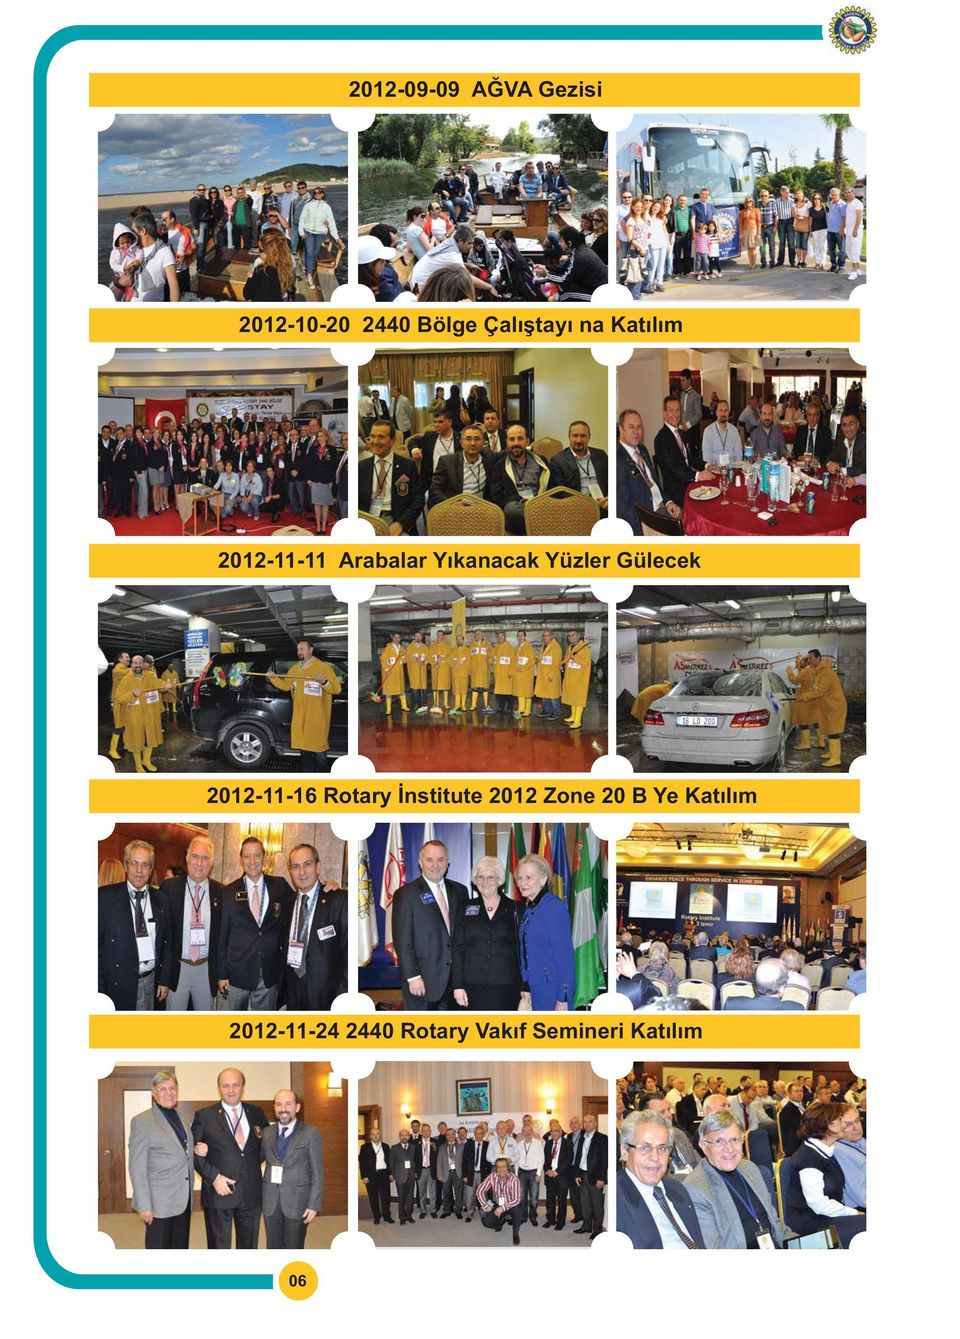 Yüzler Gülecek 2012-11-16 Rotary Ýnstitute 2012 Zone